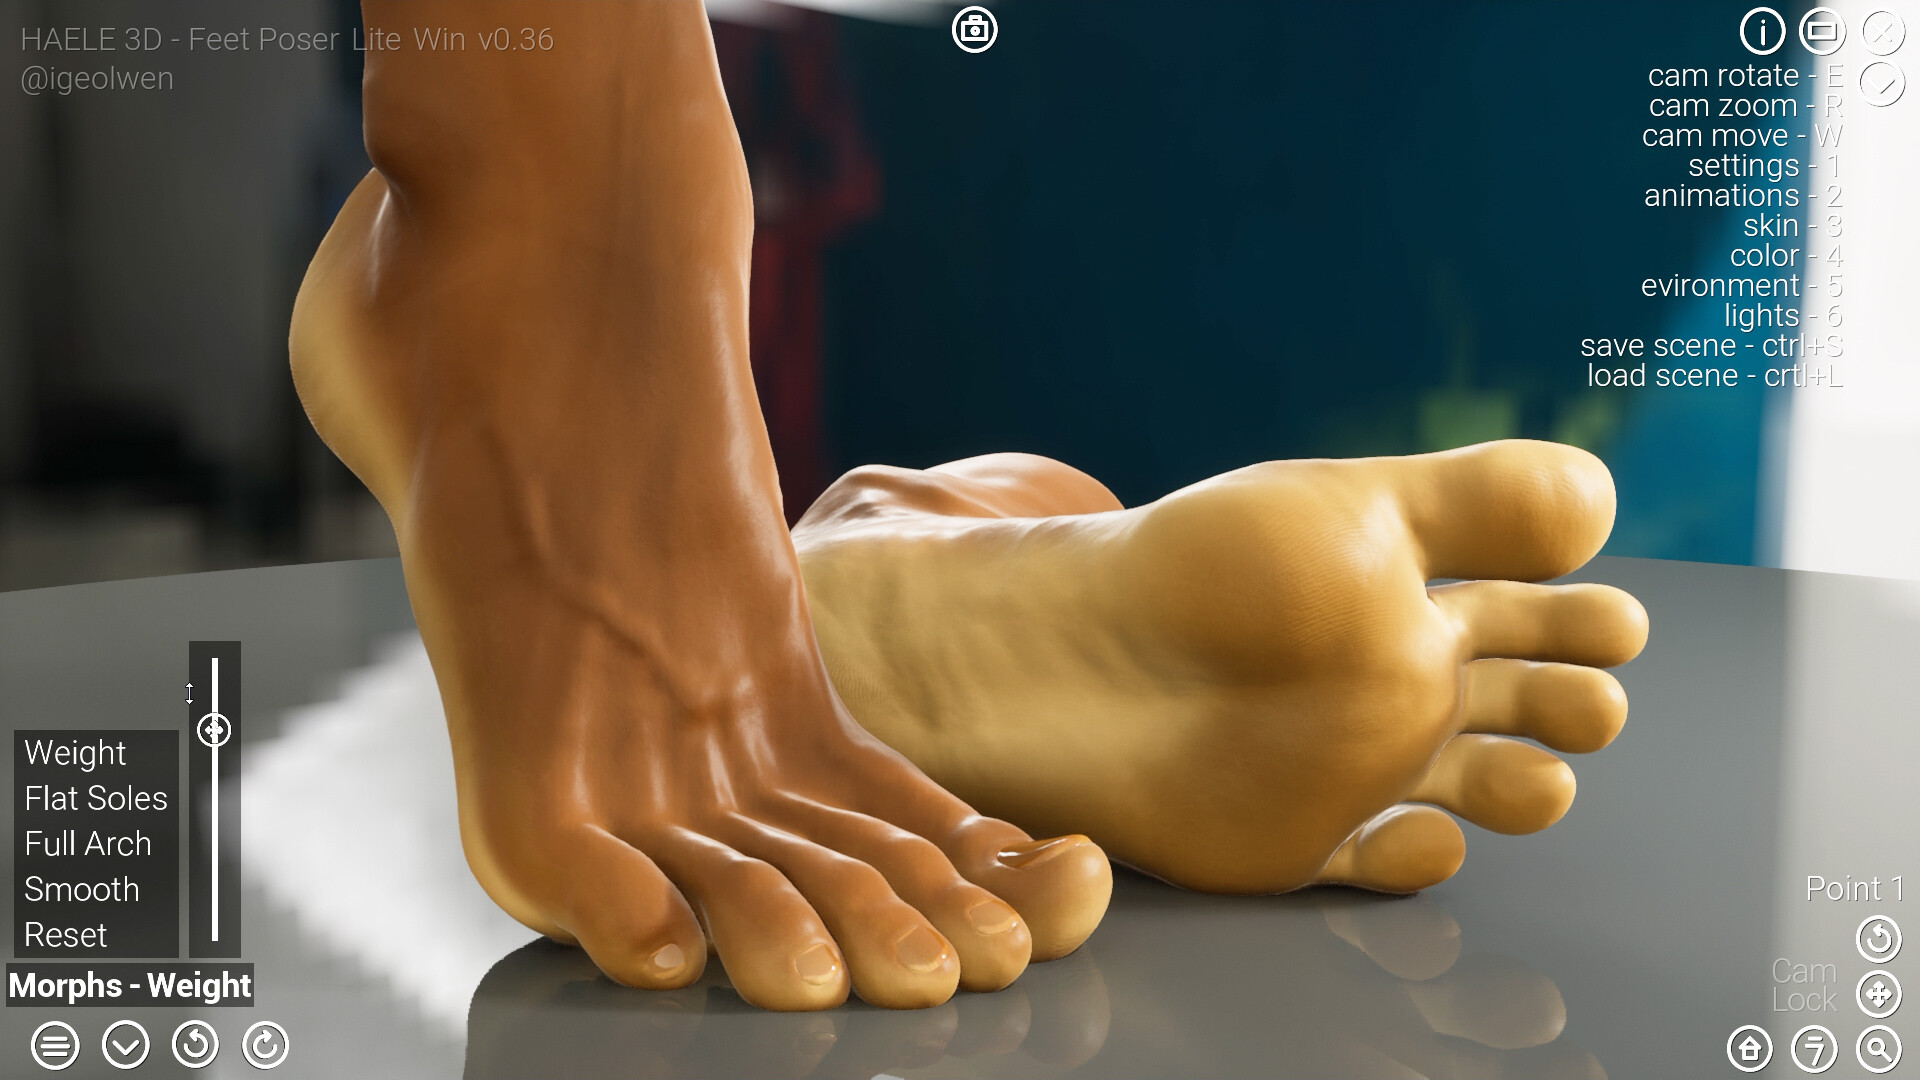 足部造型模拟器 - 专业版|官方中文|HAELE 3D - Feet Poser Pro插图11